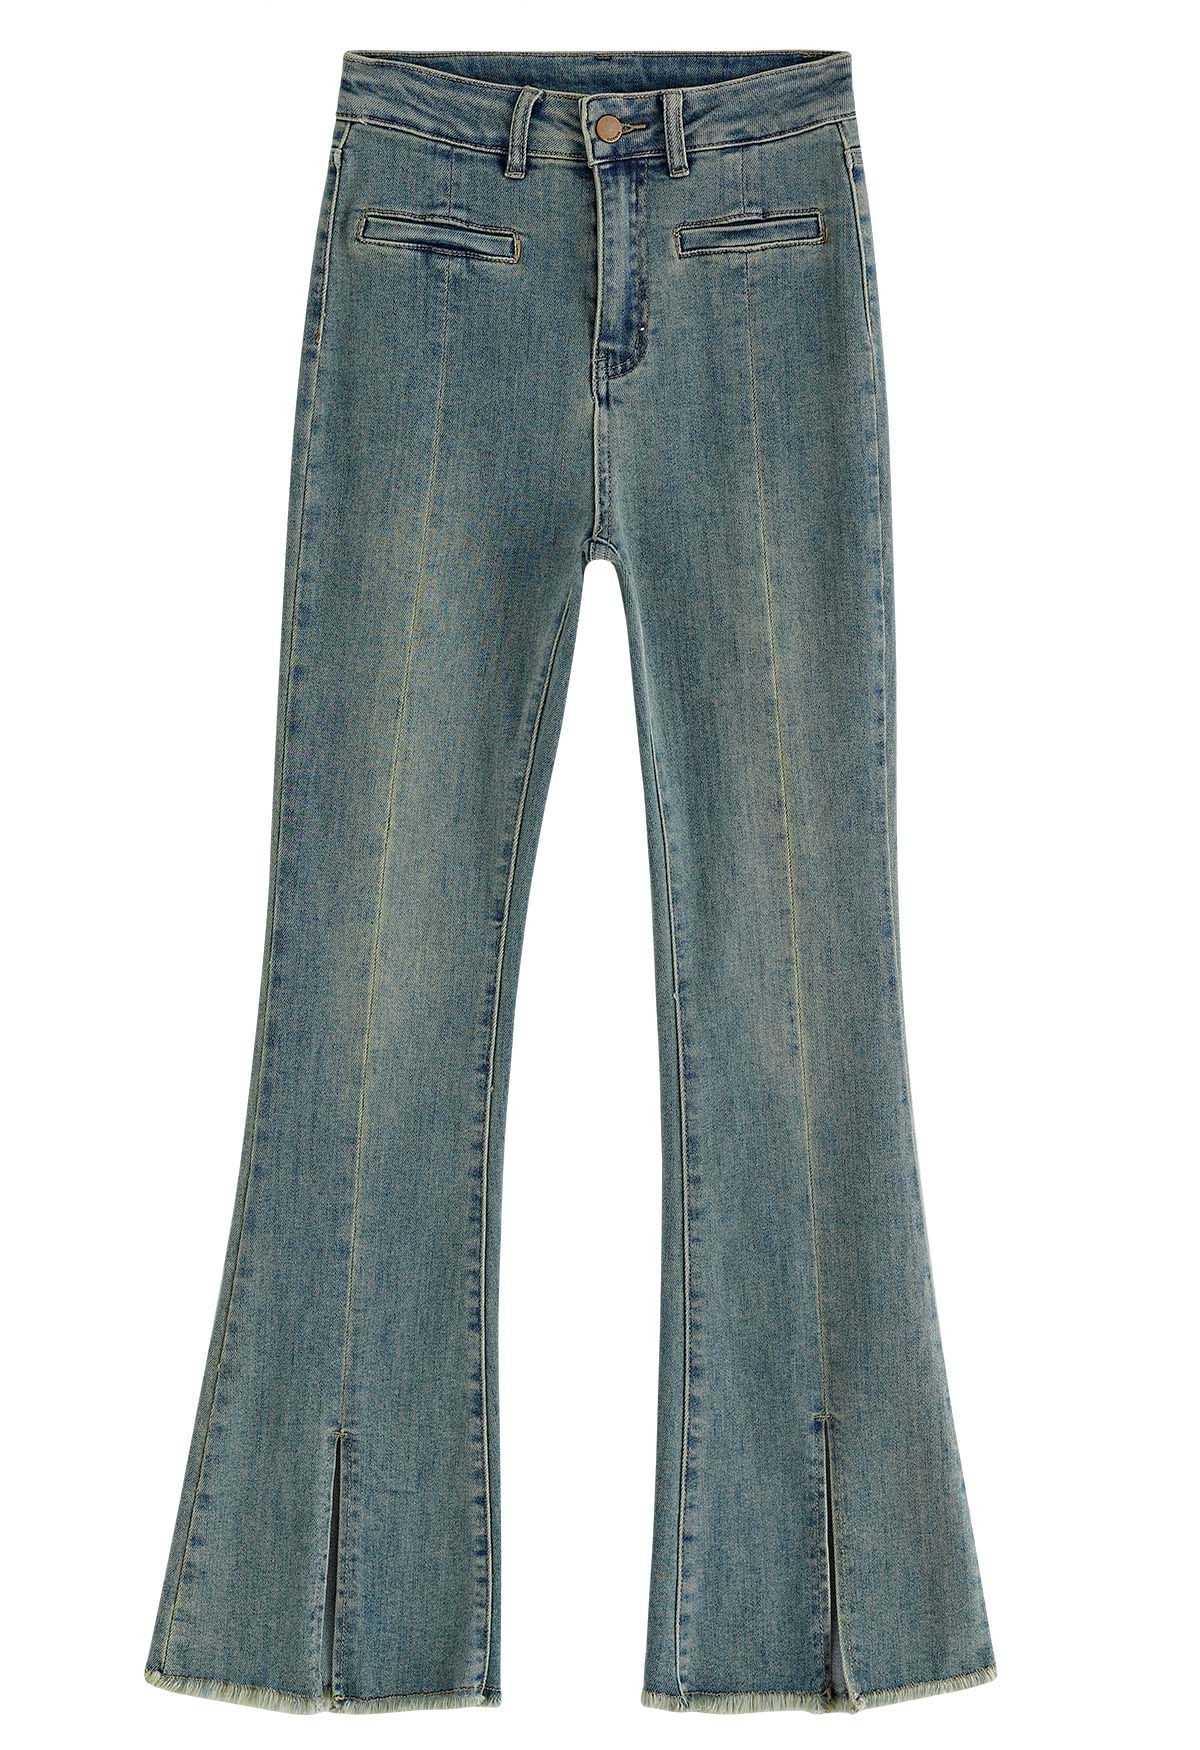 Welt Pocket Slit Frayed Hem Jeans - Retro, Indie and Unique Fashion